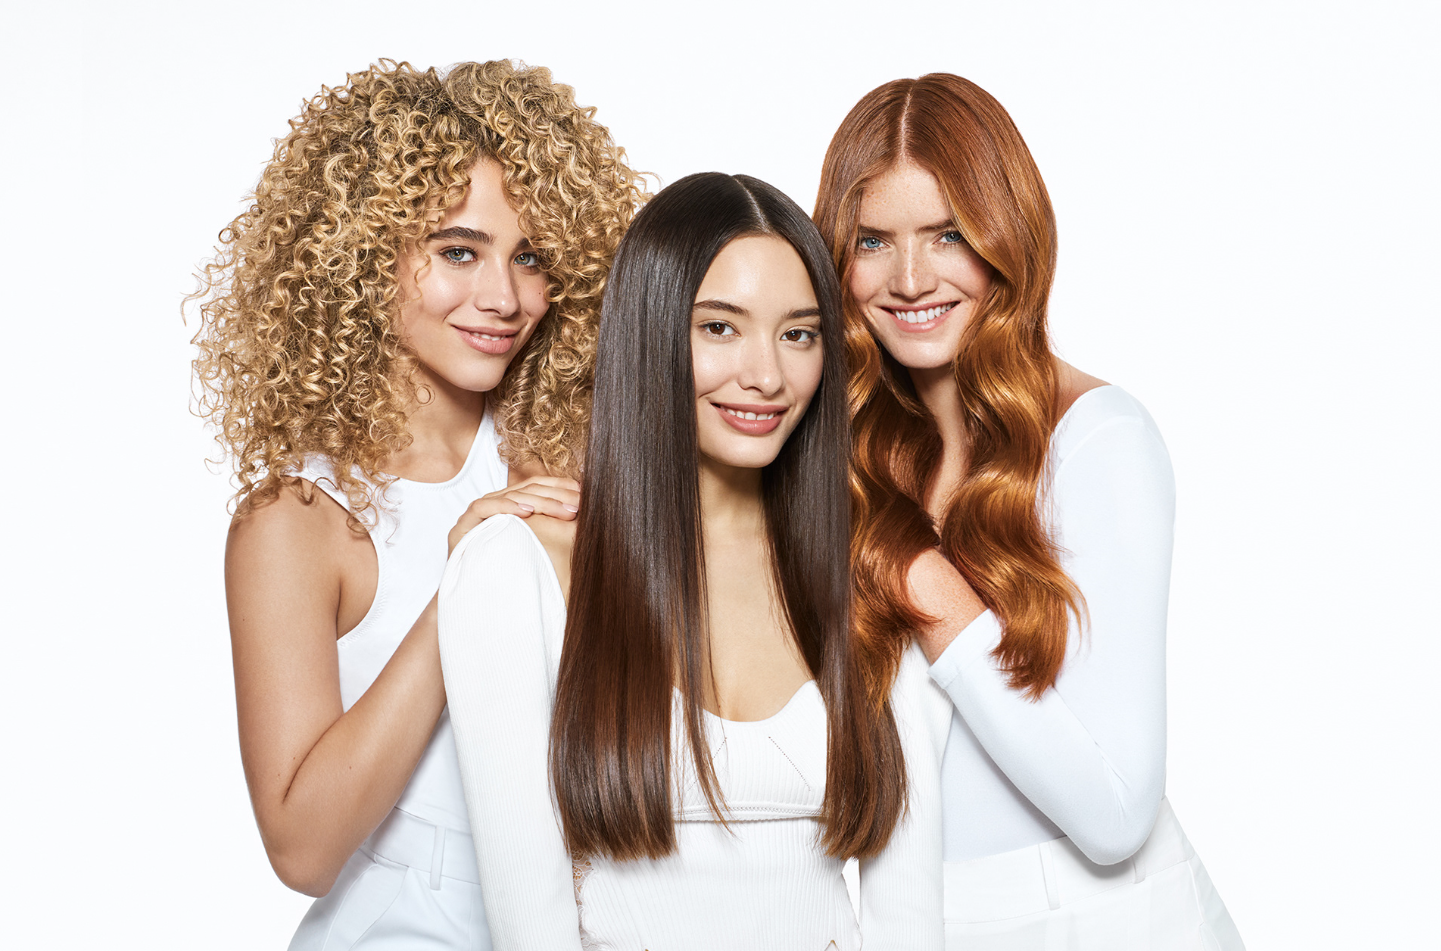 Fotografia com três modelos femininas com tipos de cabelo diferentes.